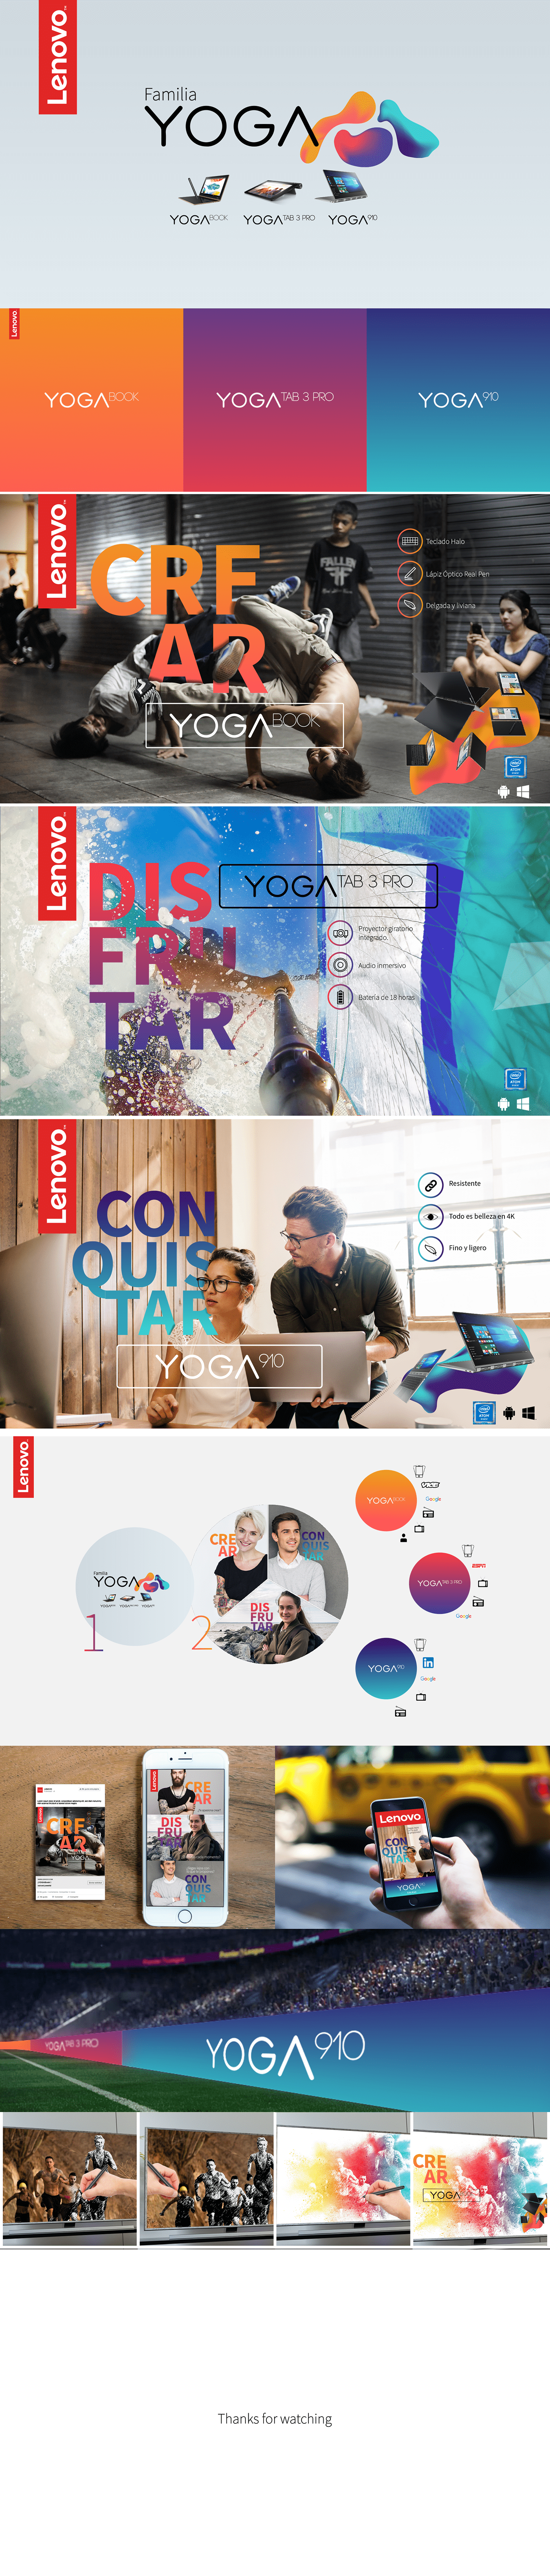 Lenovo ad publicidad diseño diseño gráfico Estrategia medios